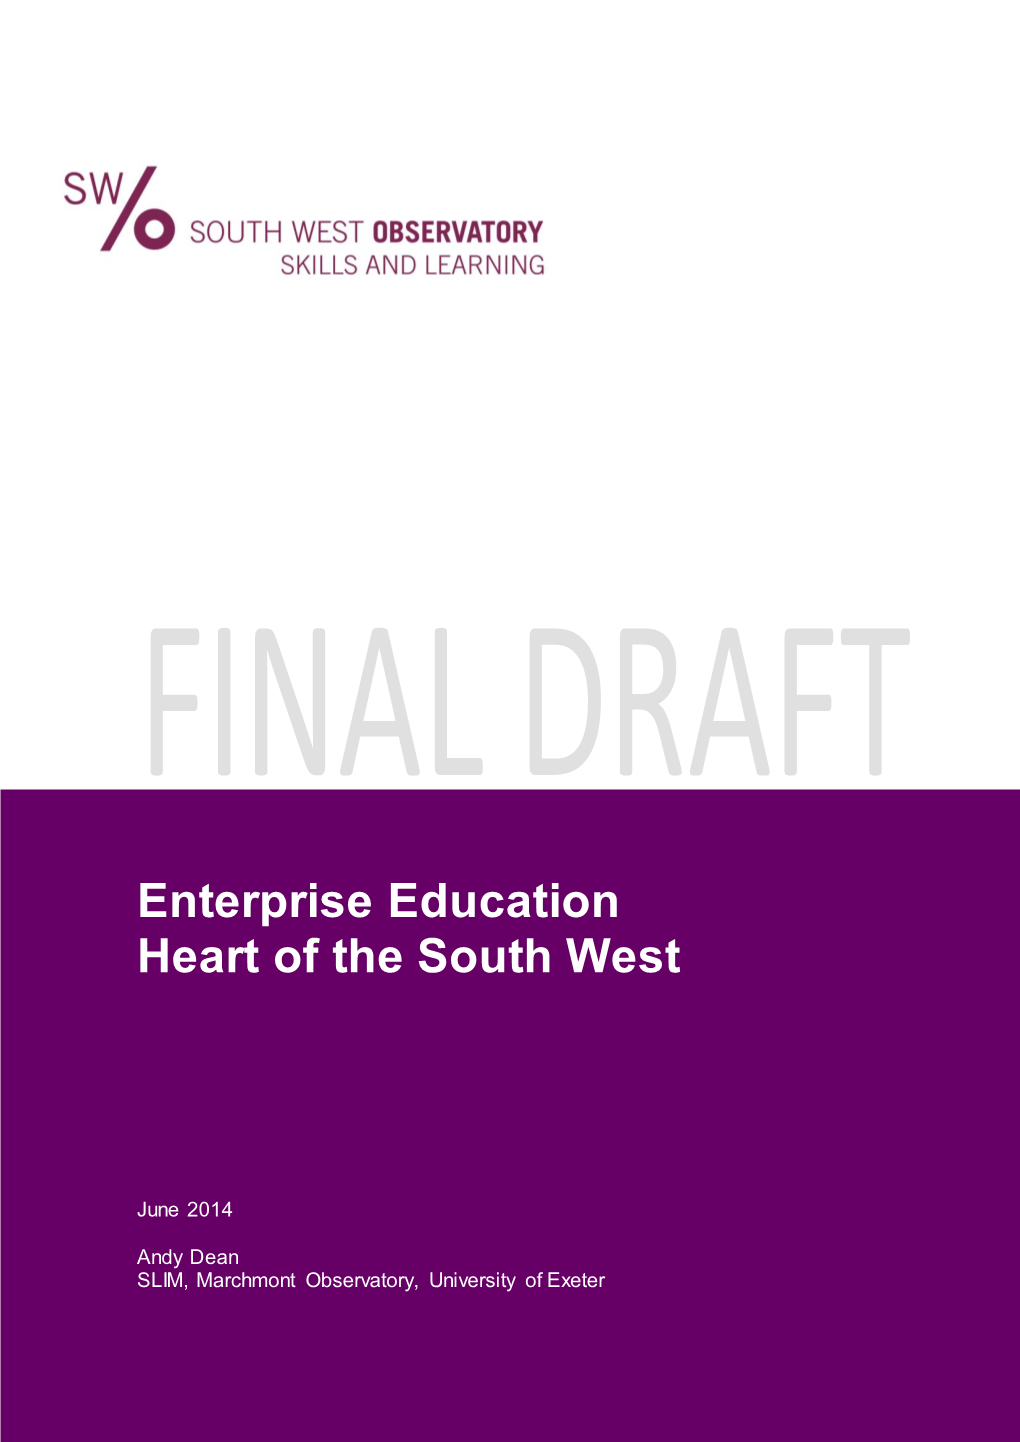 Enterprise Education Review – Questions